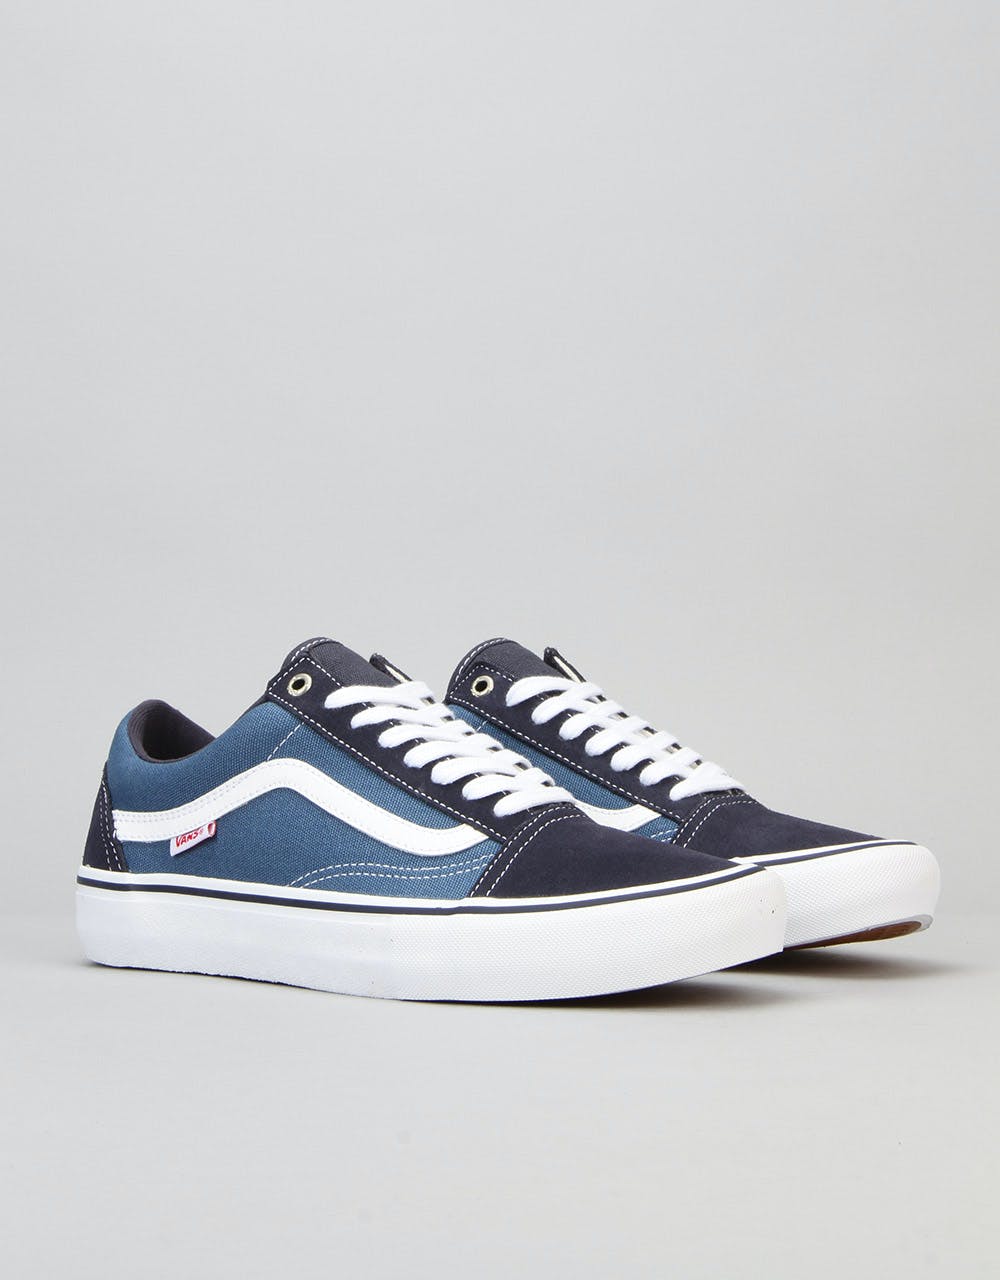 Vans Old Skool Pro Skate Shoes - Navy/Stv Navy/White